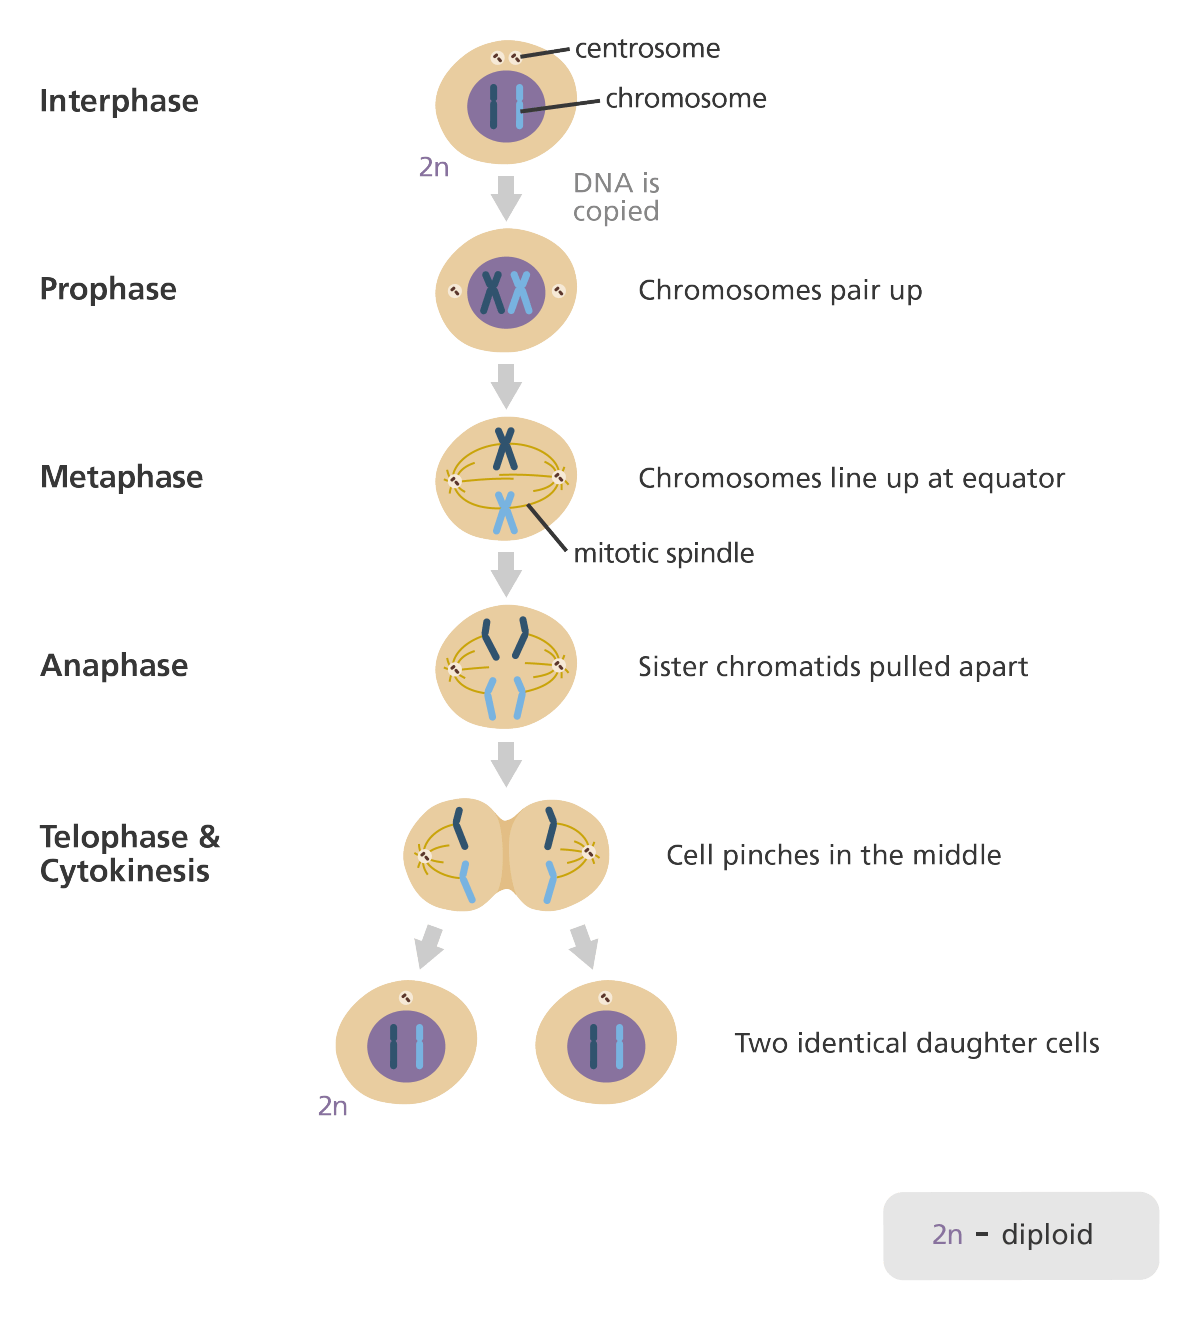 pada pembelahan sel mitosis pemisahan kromatid dari sentromer terjadi pada